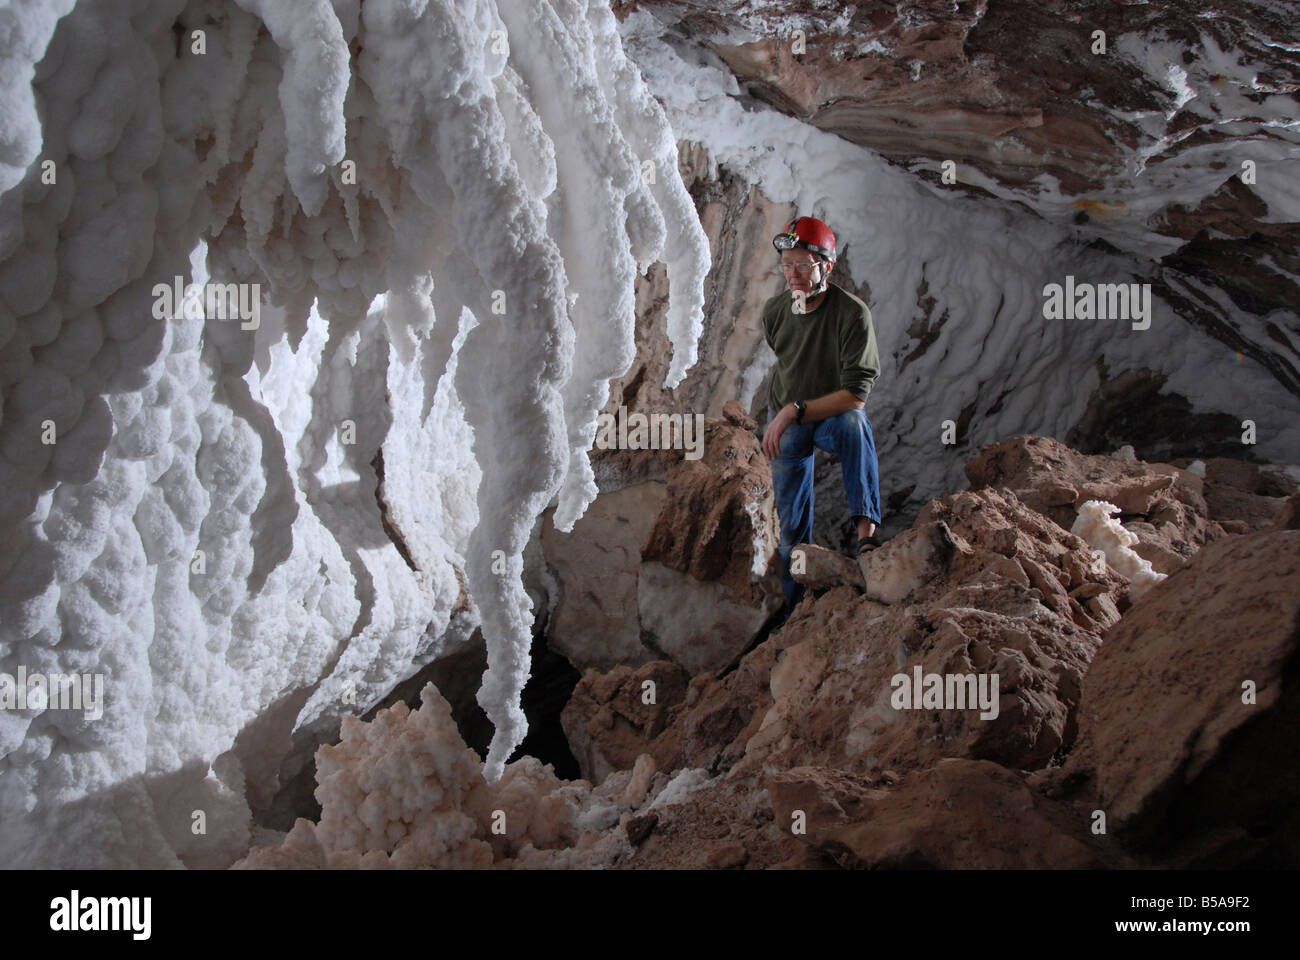 Gebogene Stalaktiten und Wand dann reines Salz in Höhle in Namakdan Salzstock Qeshm Insel südlichen Iran-Nahost Stockfoto